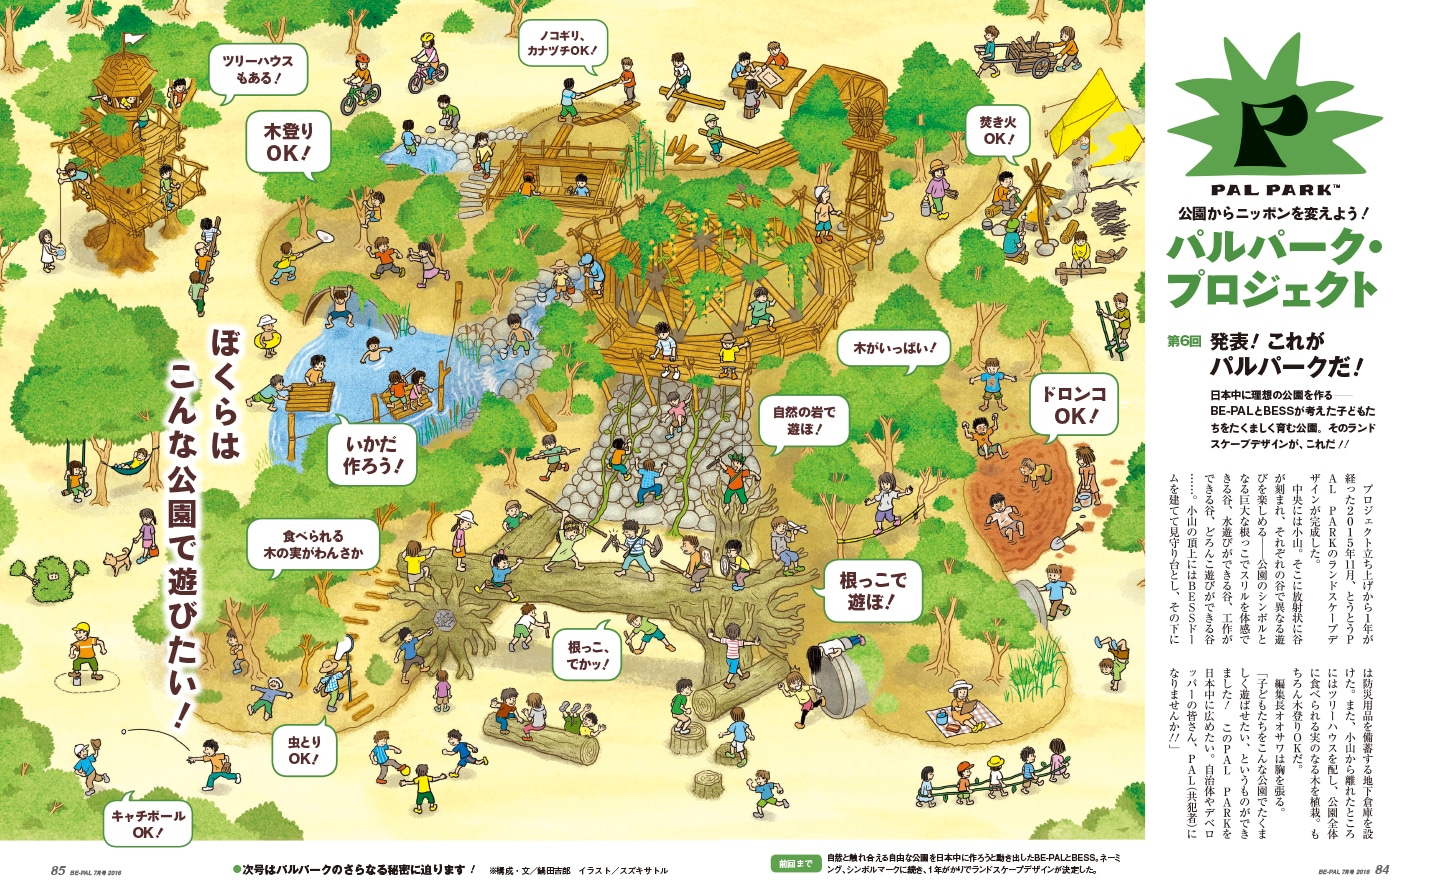 2016年から誌面で連載が始まったパルパークプロジェクト。「公園からニッポンを変えよう！」を合言葉に、日本中に理想の公園を作りたいという編集者の妄想を具現化していった。（イラスト：スズキサトル）